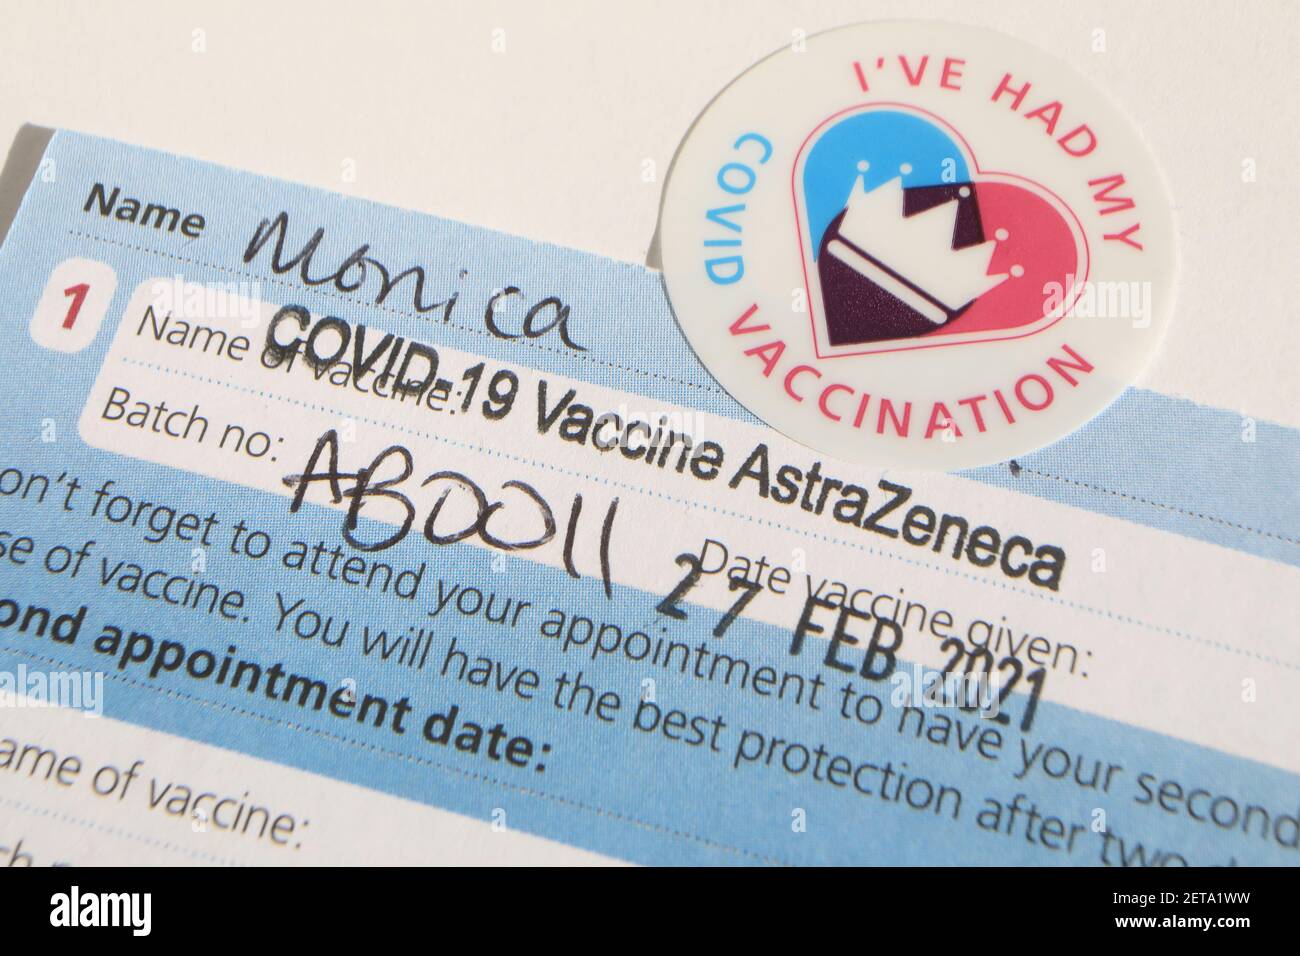 Covid vaccine appt card, Reino Unido Foto de stock